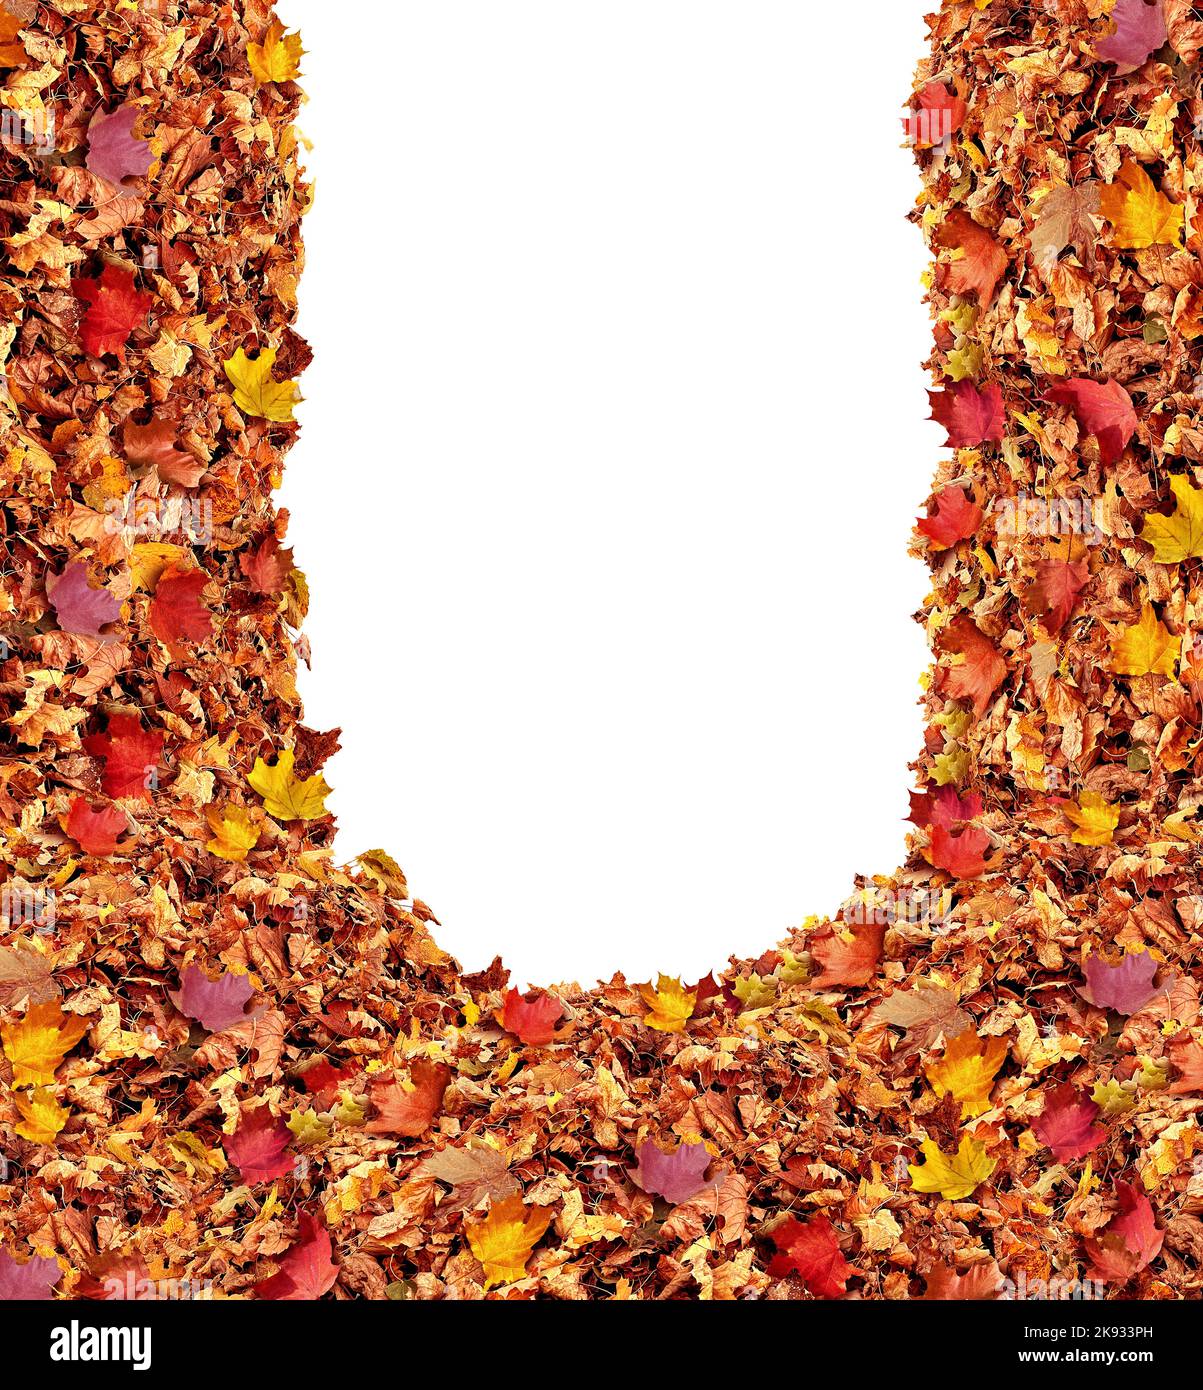 Pile de feuilles d'automne comme colline de feuilles de la saison d'automne comme symbole de la nature saisonnière pour septembre octobre et Novmber cadre vierge avec un blanc isolé. Banque D'Images